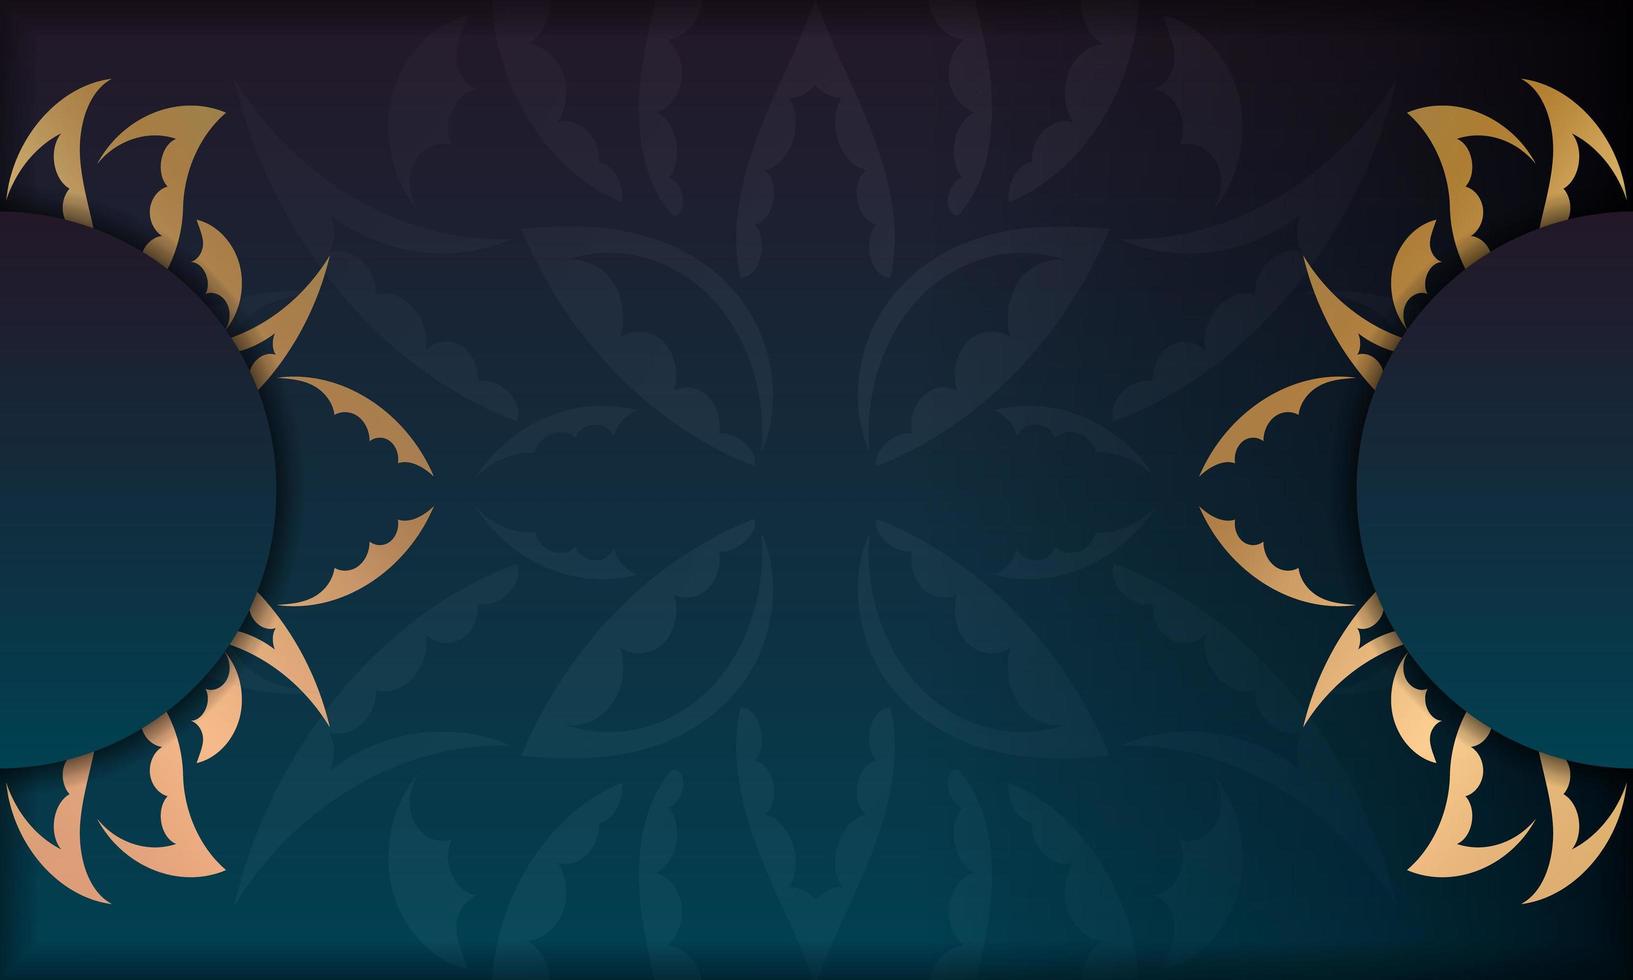 Hintergrund mit blauer Farbverlaufsfarbe mit griechischem Goldmuster für das Design unter dem Text vektor